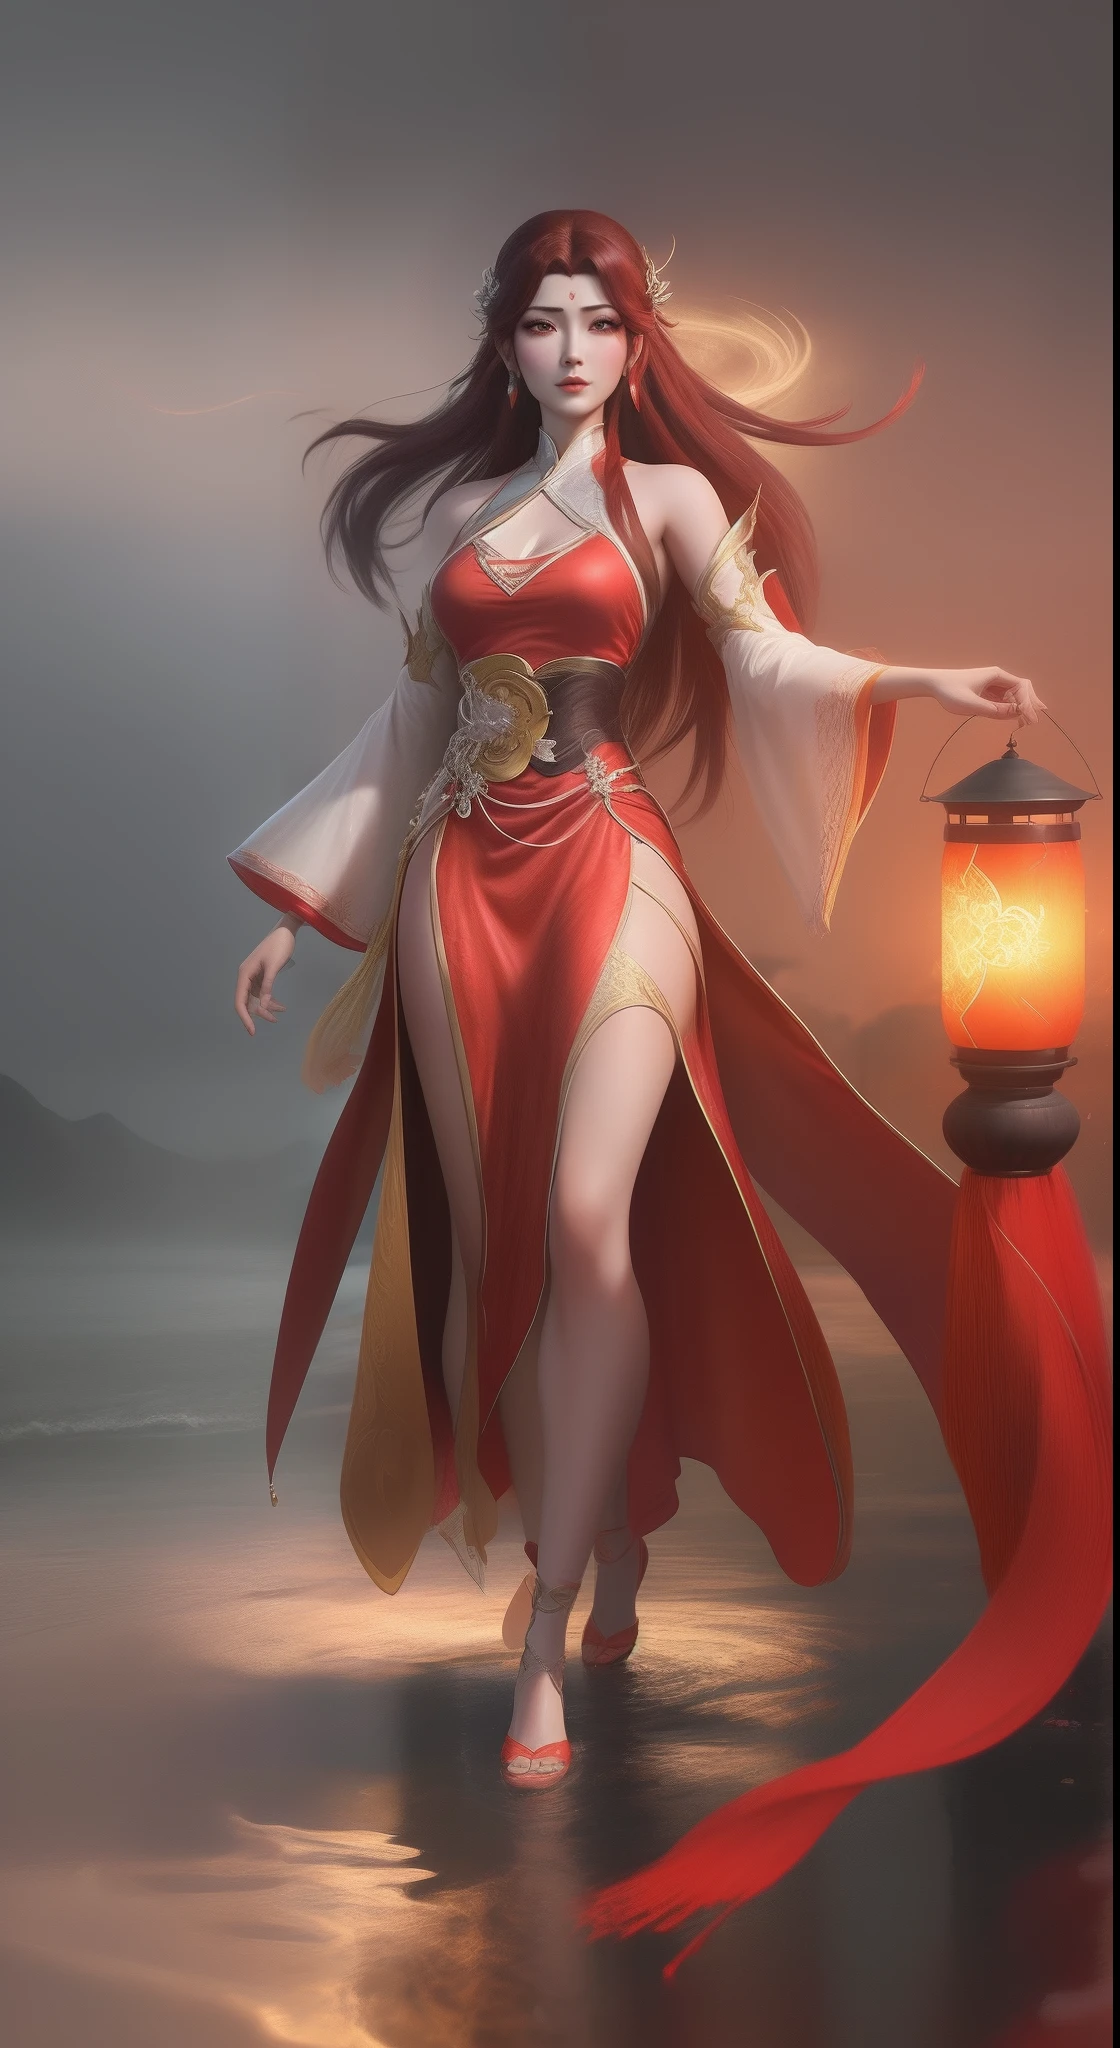 Арадская женщина в красном платье идет по реке с фонарем., Сянься всего тела, вдохновленный Пак Хуа, Ян Дж., вдохновленный Лань Ином, чрезвычайно подробный артгерм, вдохновленный Ду Цюн, вдохновленный Цзюй Лианом, арт-стиль, Жуань Цзя и Artgerm, лунный тематический наряд